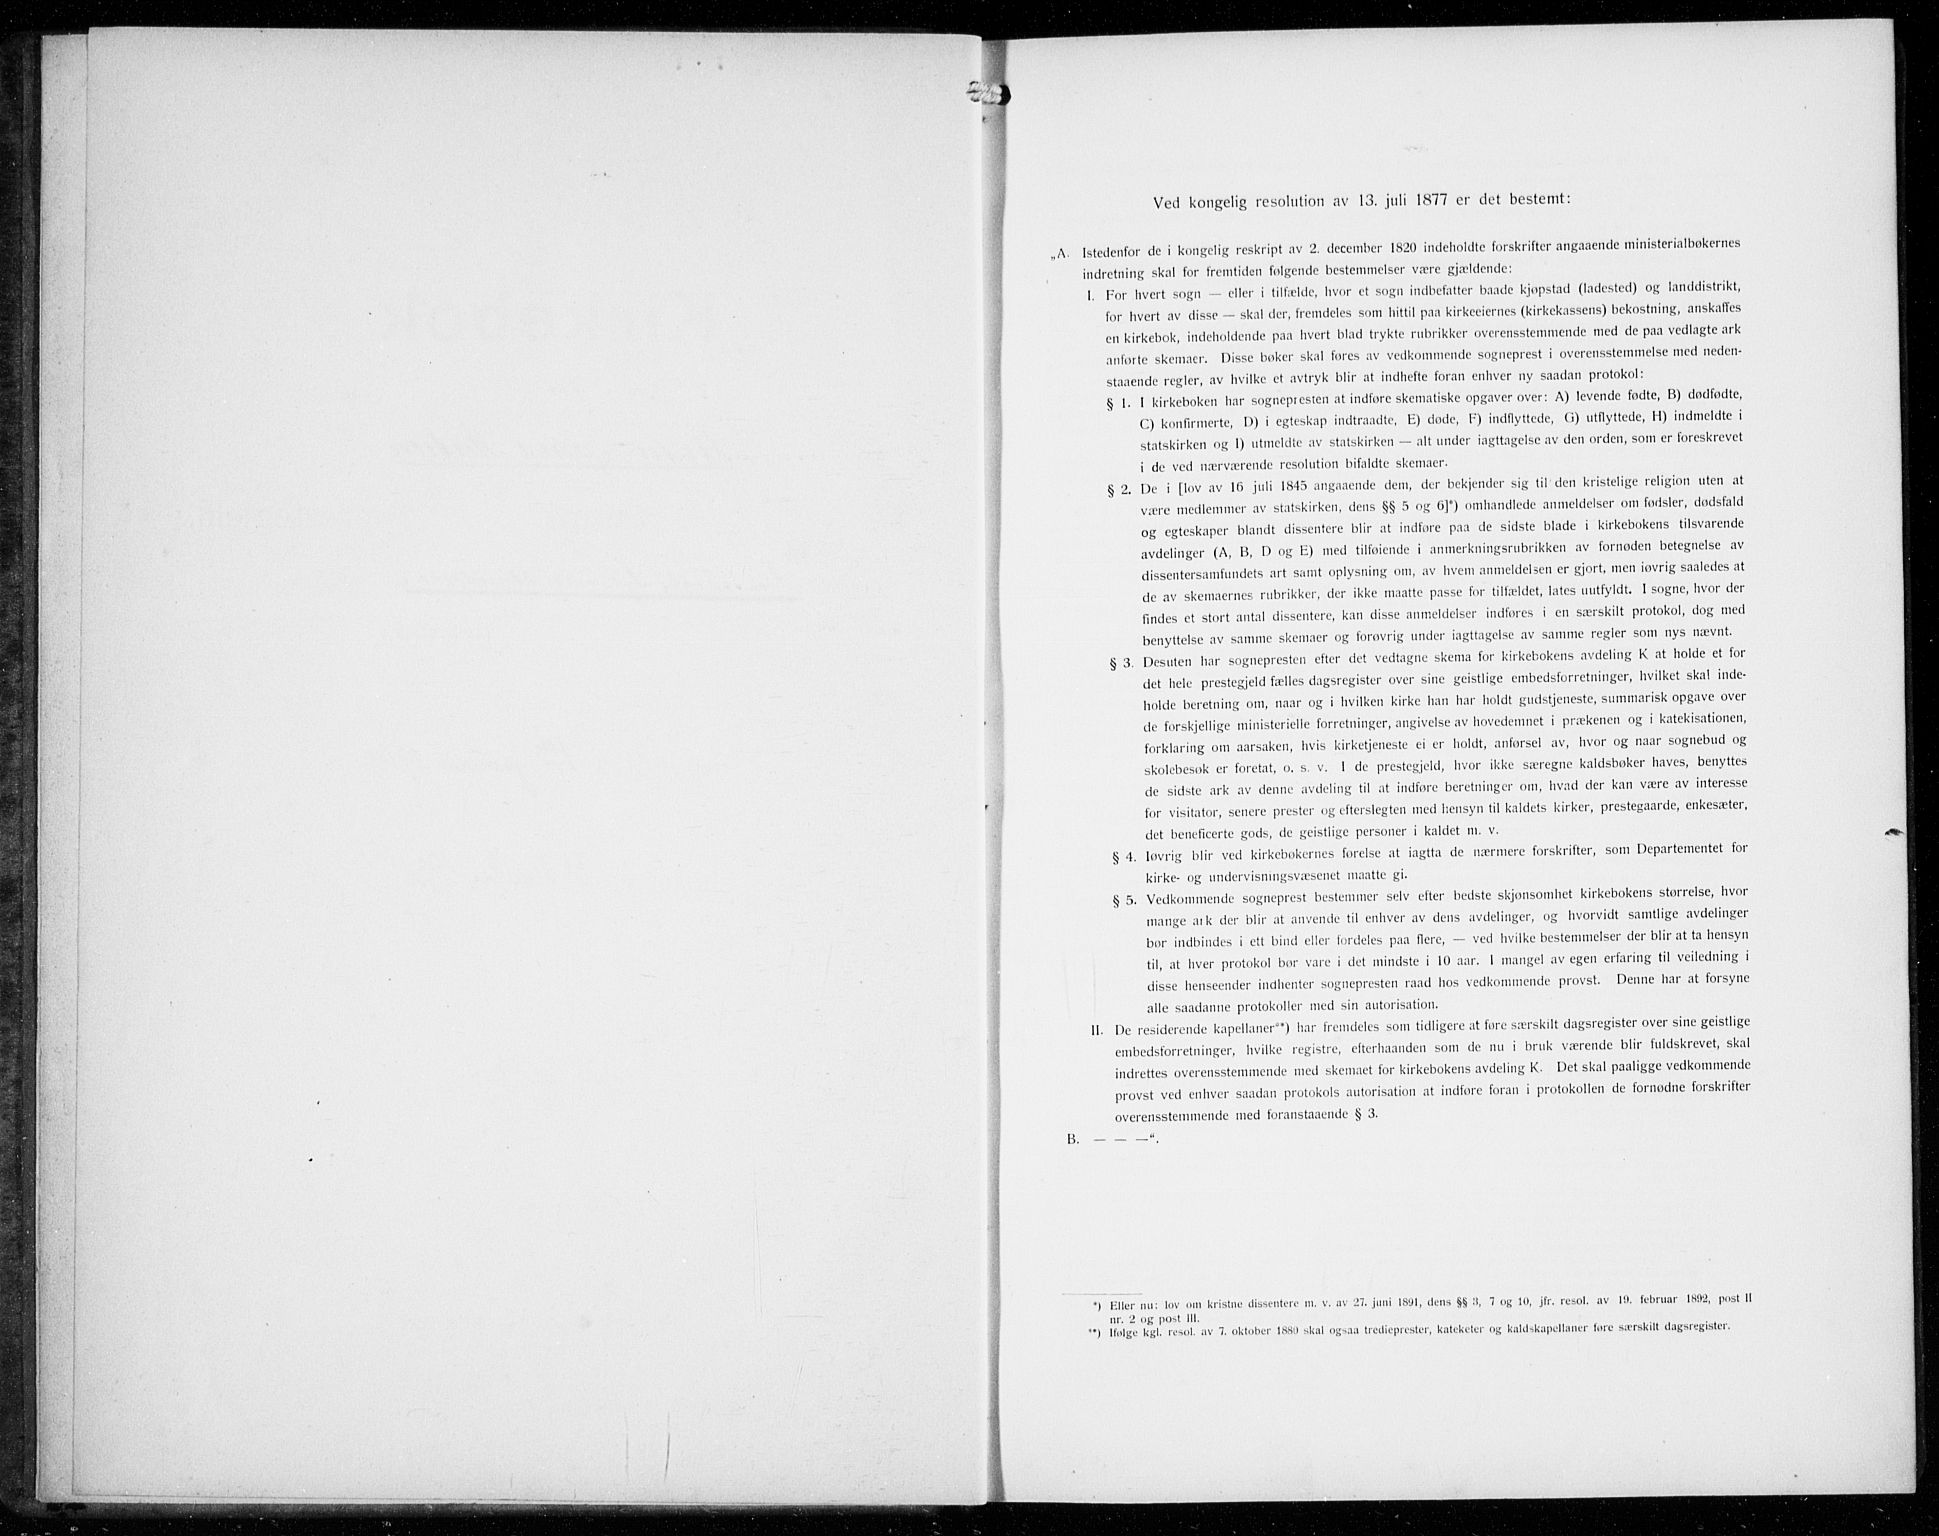 Den norske sjømannsmisjon i utlandet/Antwerpen, SAB/SAB/PA-0105/H/Ha/L0003: Ministerialbok nr. A 3, 1914-1930